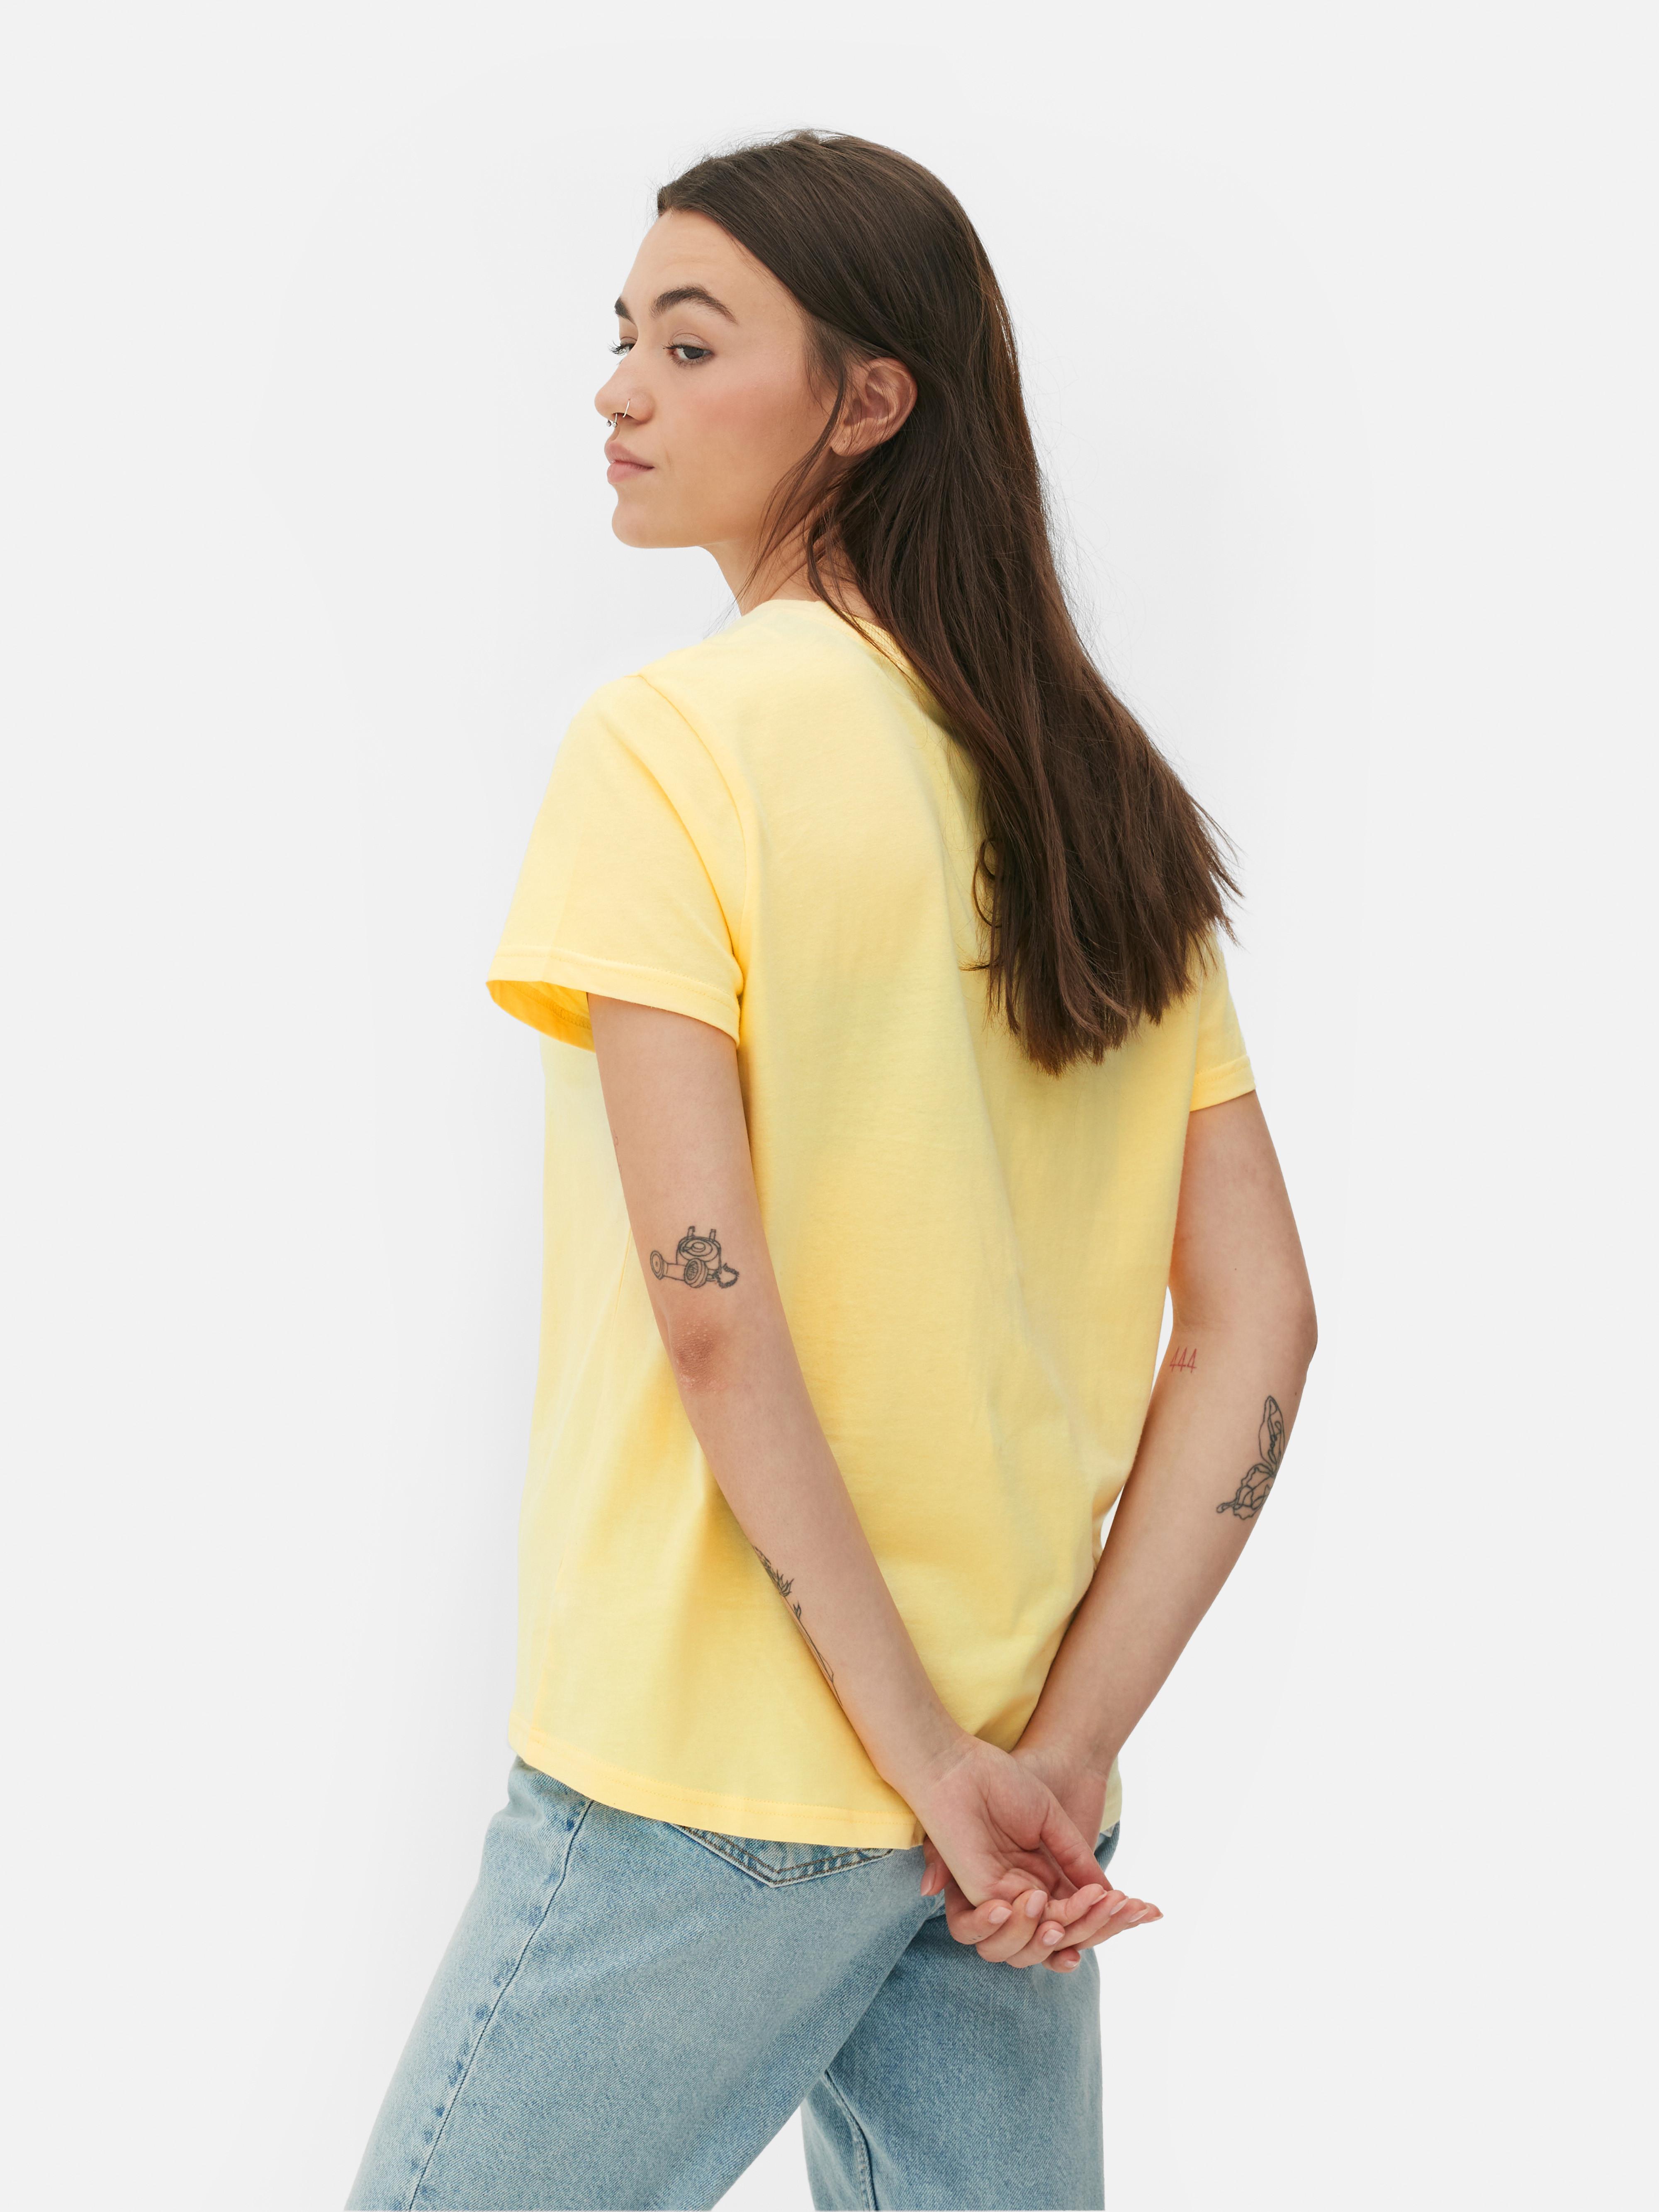 Camiseta de Piolín amarilla manga corta para niña 2T a 5T